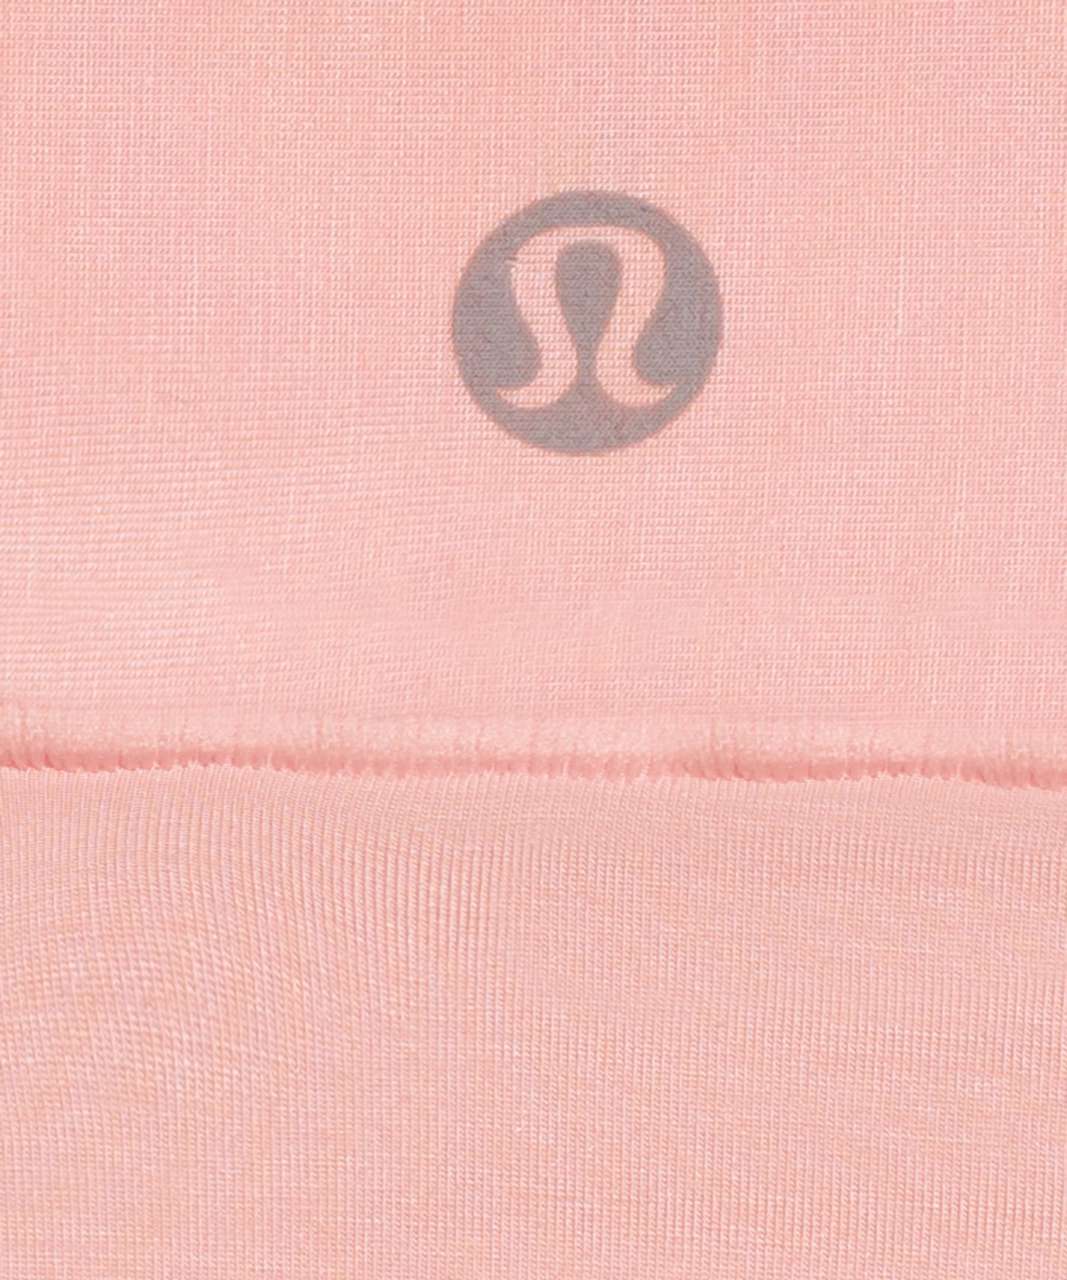 Lululemon UnderEase Mid-Rise Thong Underwear *3 Pack - Bone / Dew Pink / Black